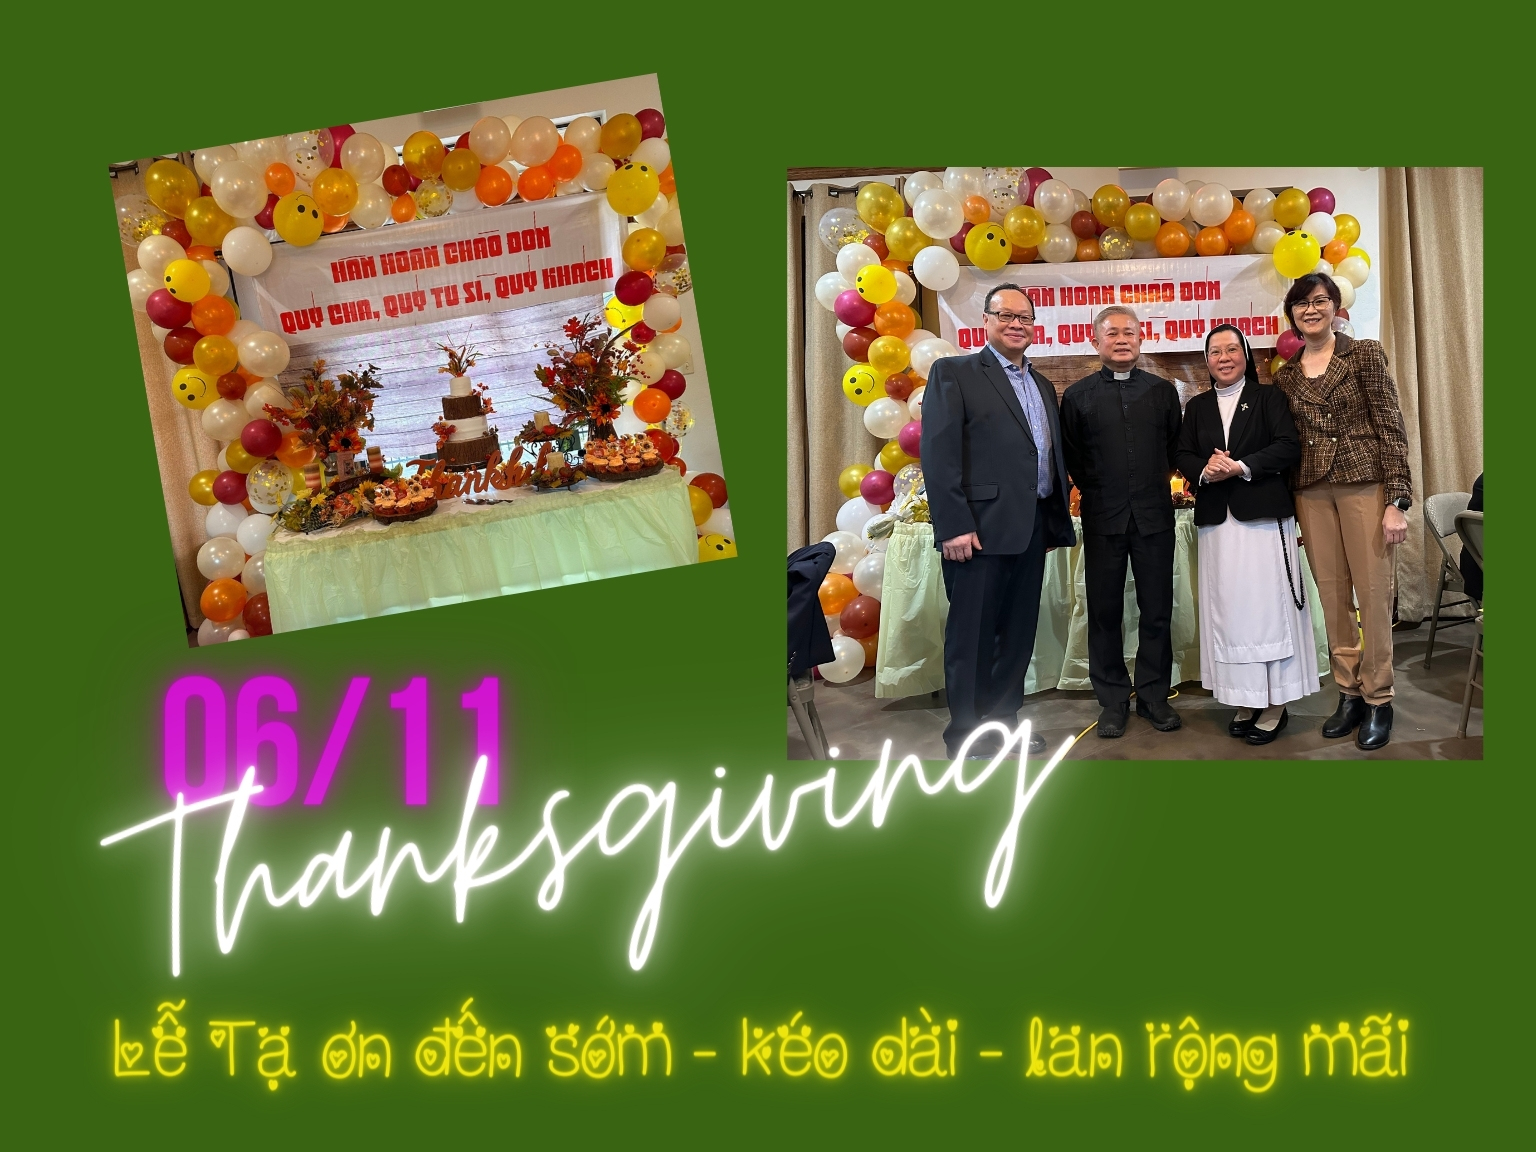 Lễ TẠ ƠN - Thanksgiving - đến sớm, kéo dài và lan rộng mãi...